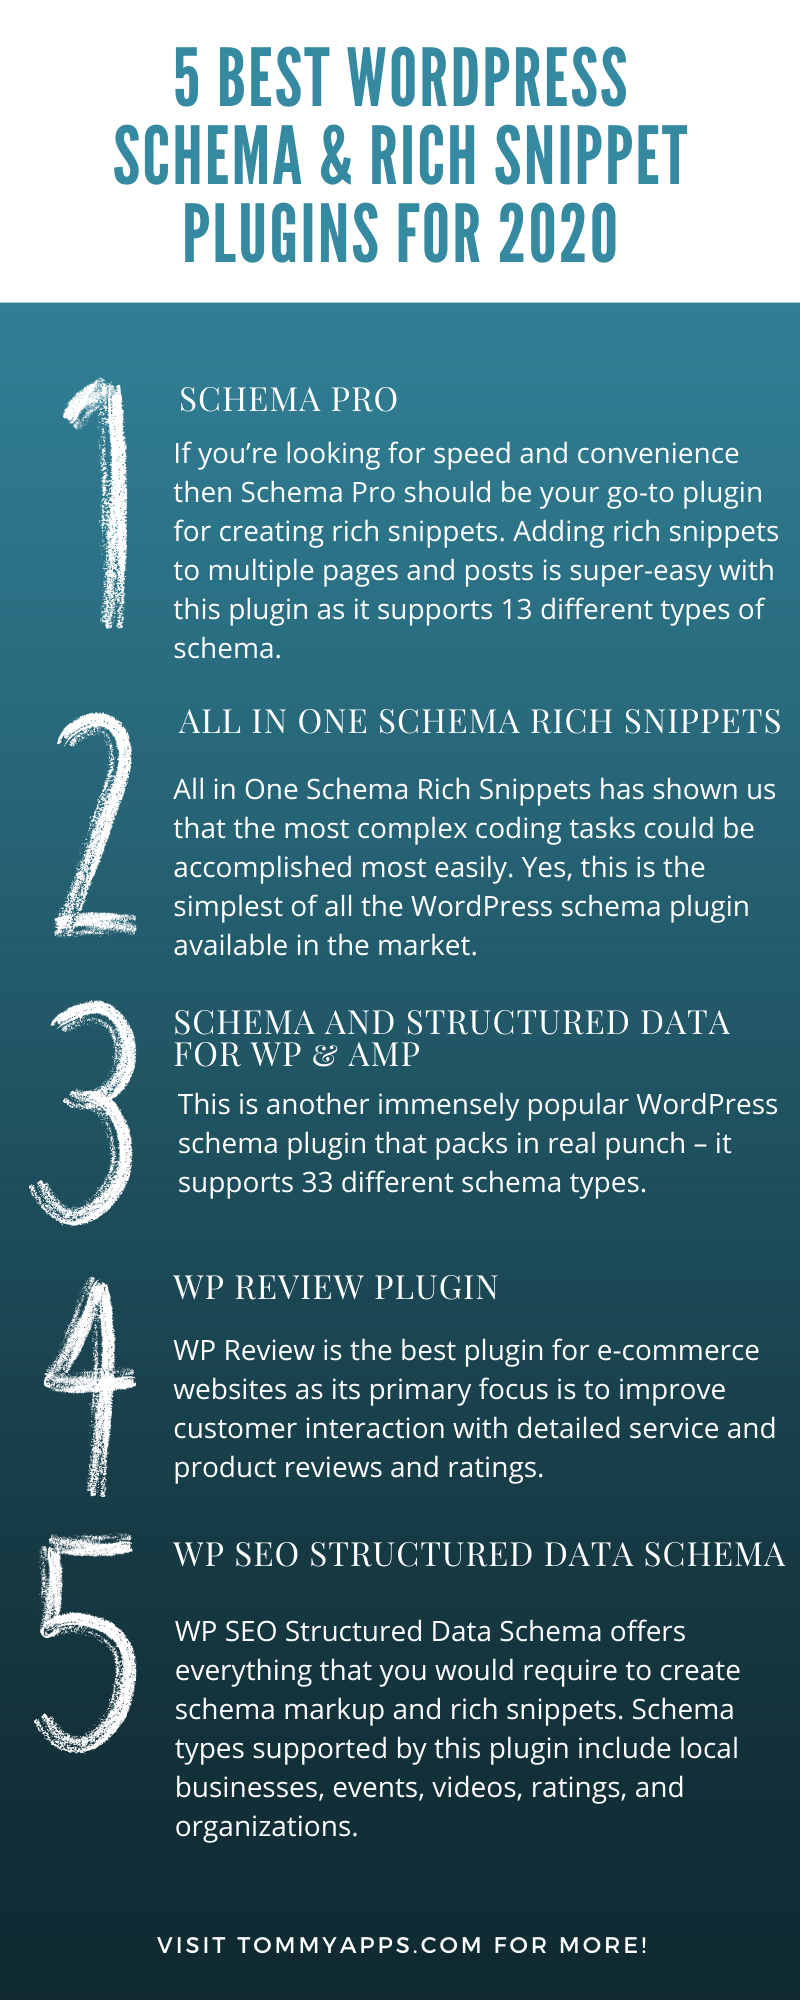 WordPress Schema and Rich Snippet Plugins 